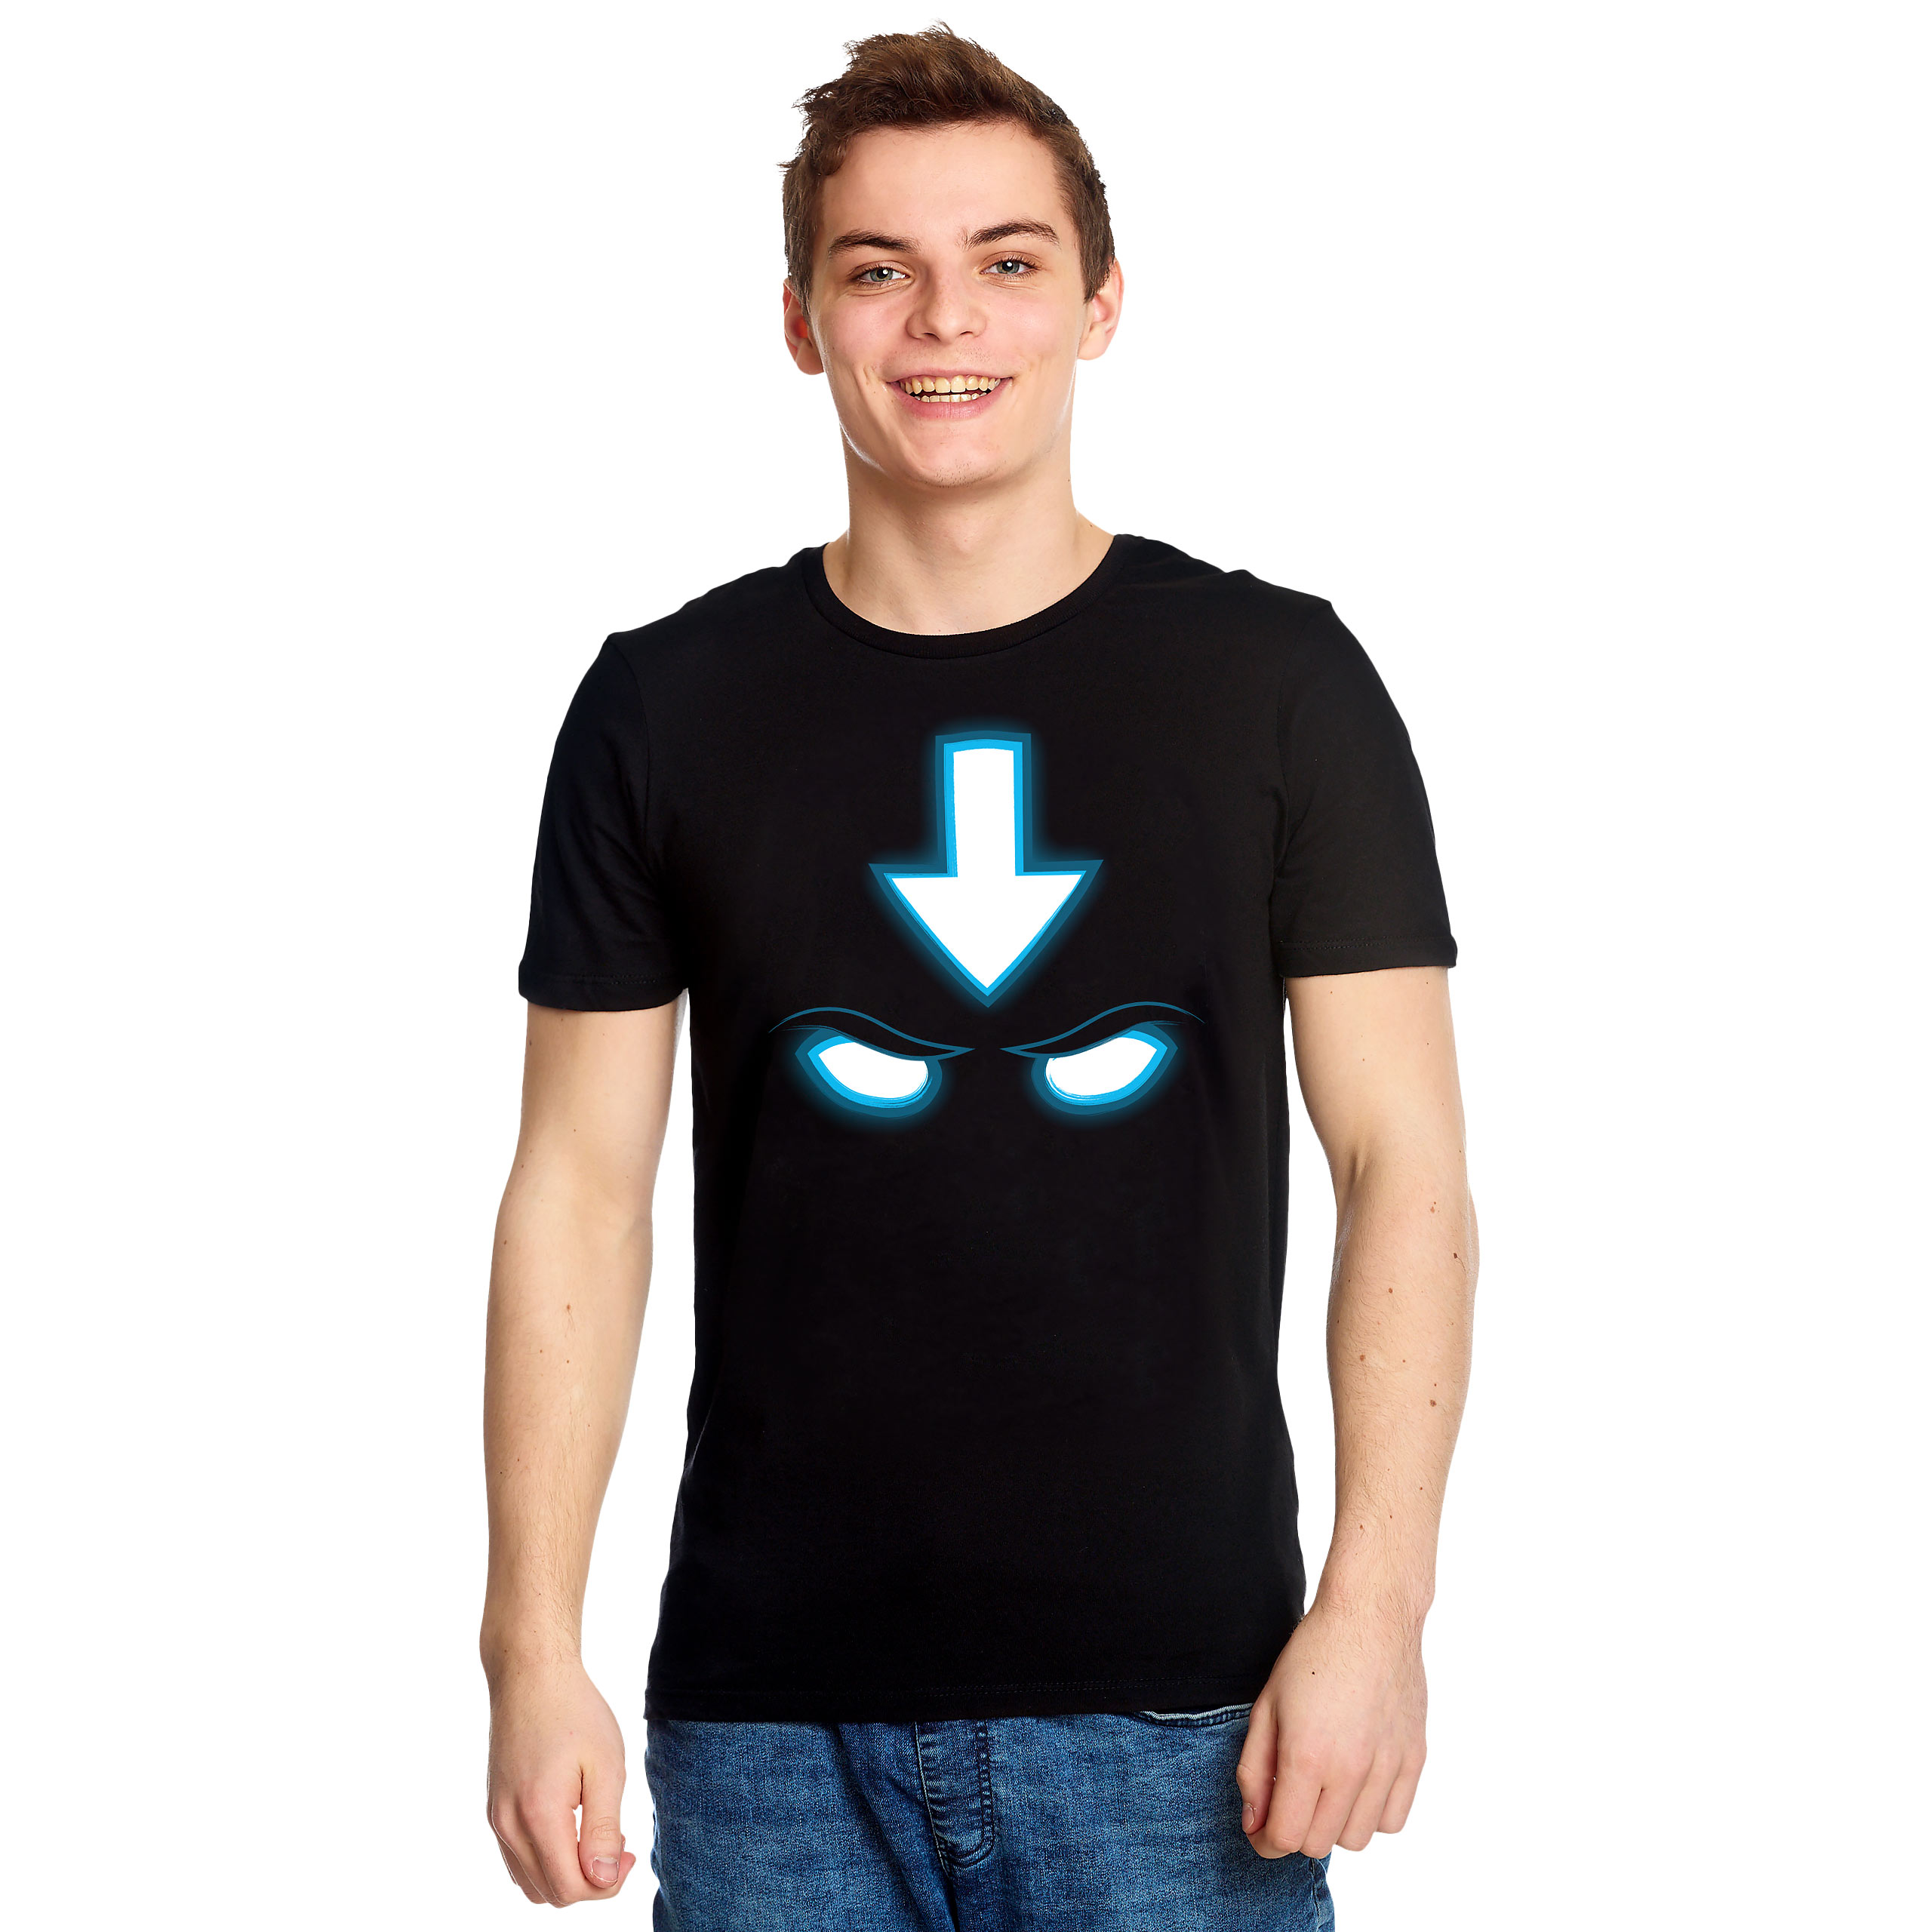 Spirit T-Shirt for Avatar Aang Fans Black